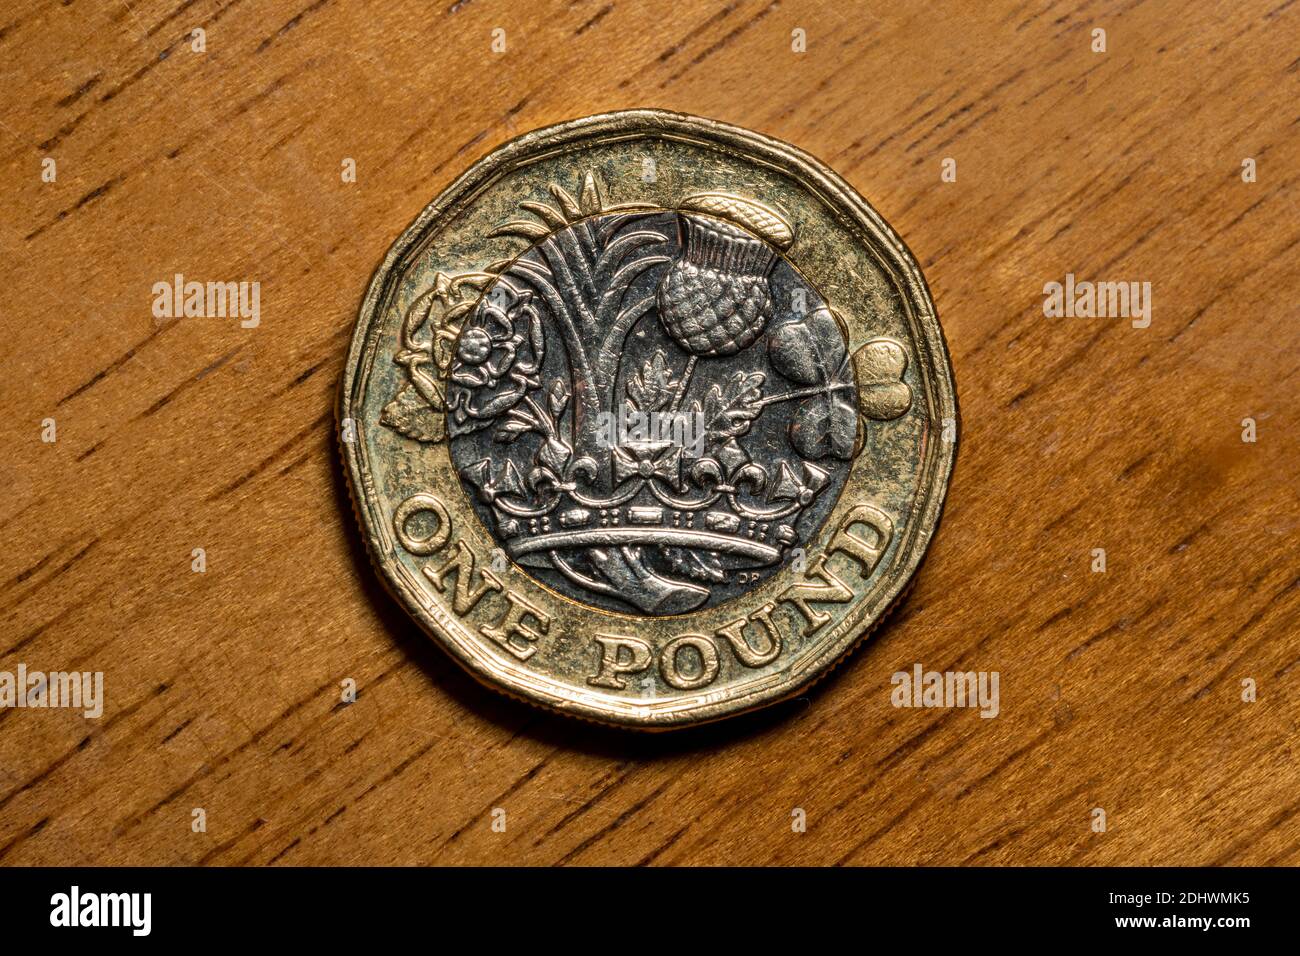 È stata introdotta una nuova moneta inglese da una libbra in Inghilterra 2017 che mostrano emblemi di ciascuna delle nazioni il conio su una foto di stock di legno Foto Stock